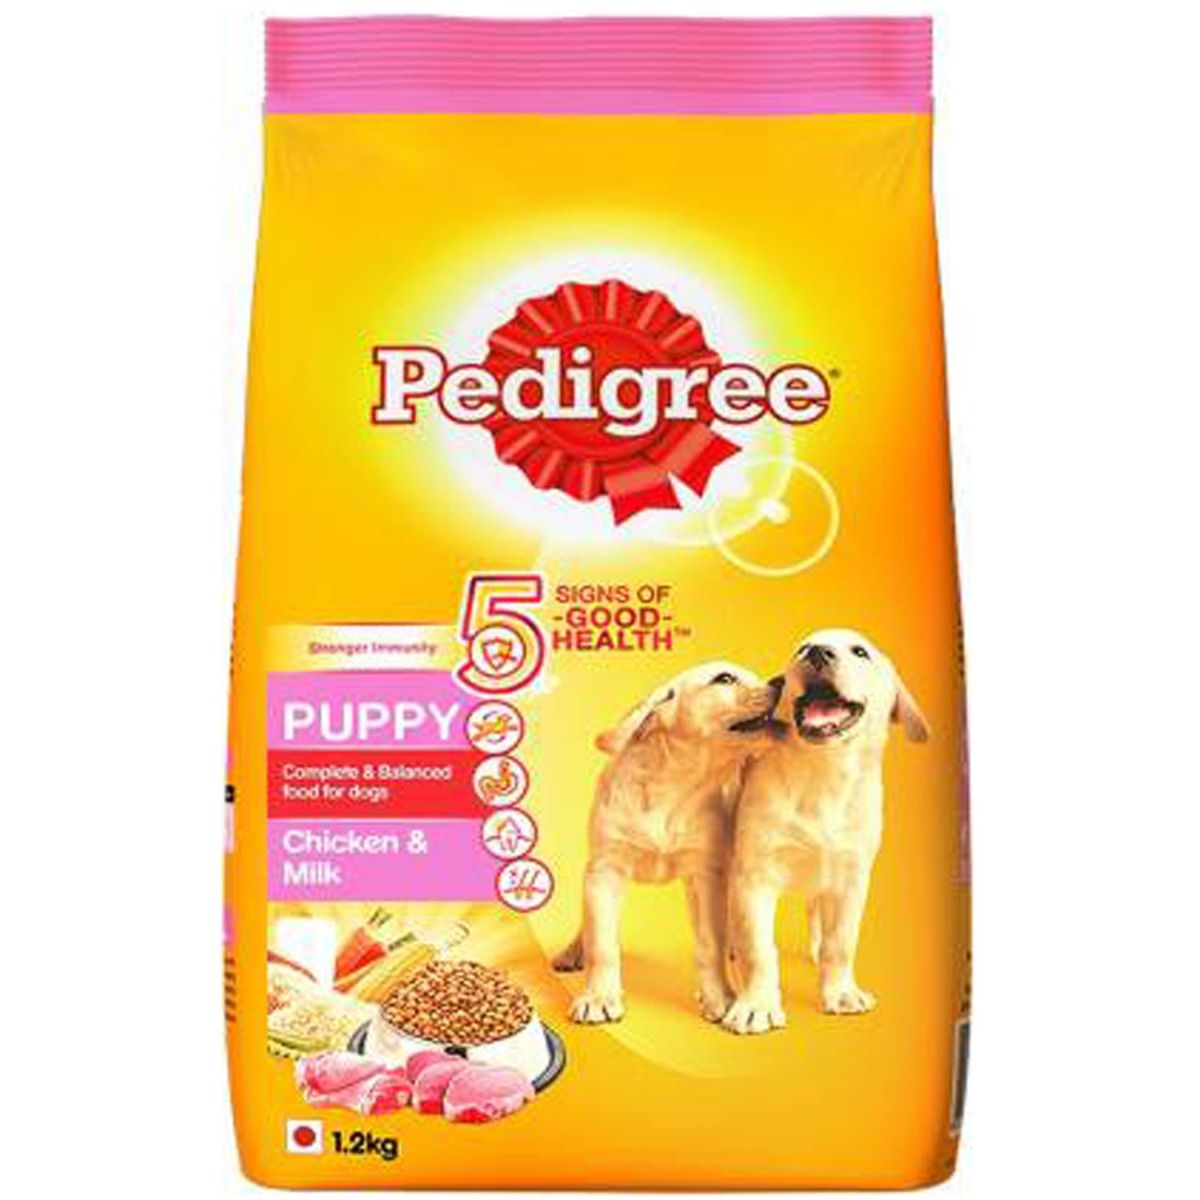 Buy Pedigree Chicken & Milk Puppy Dog Food, 1.2 kg Online